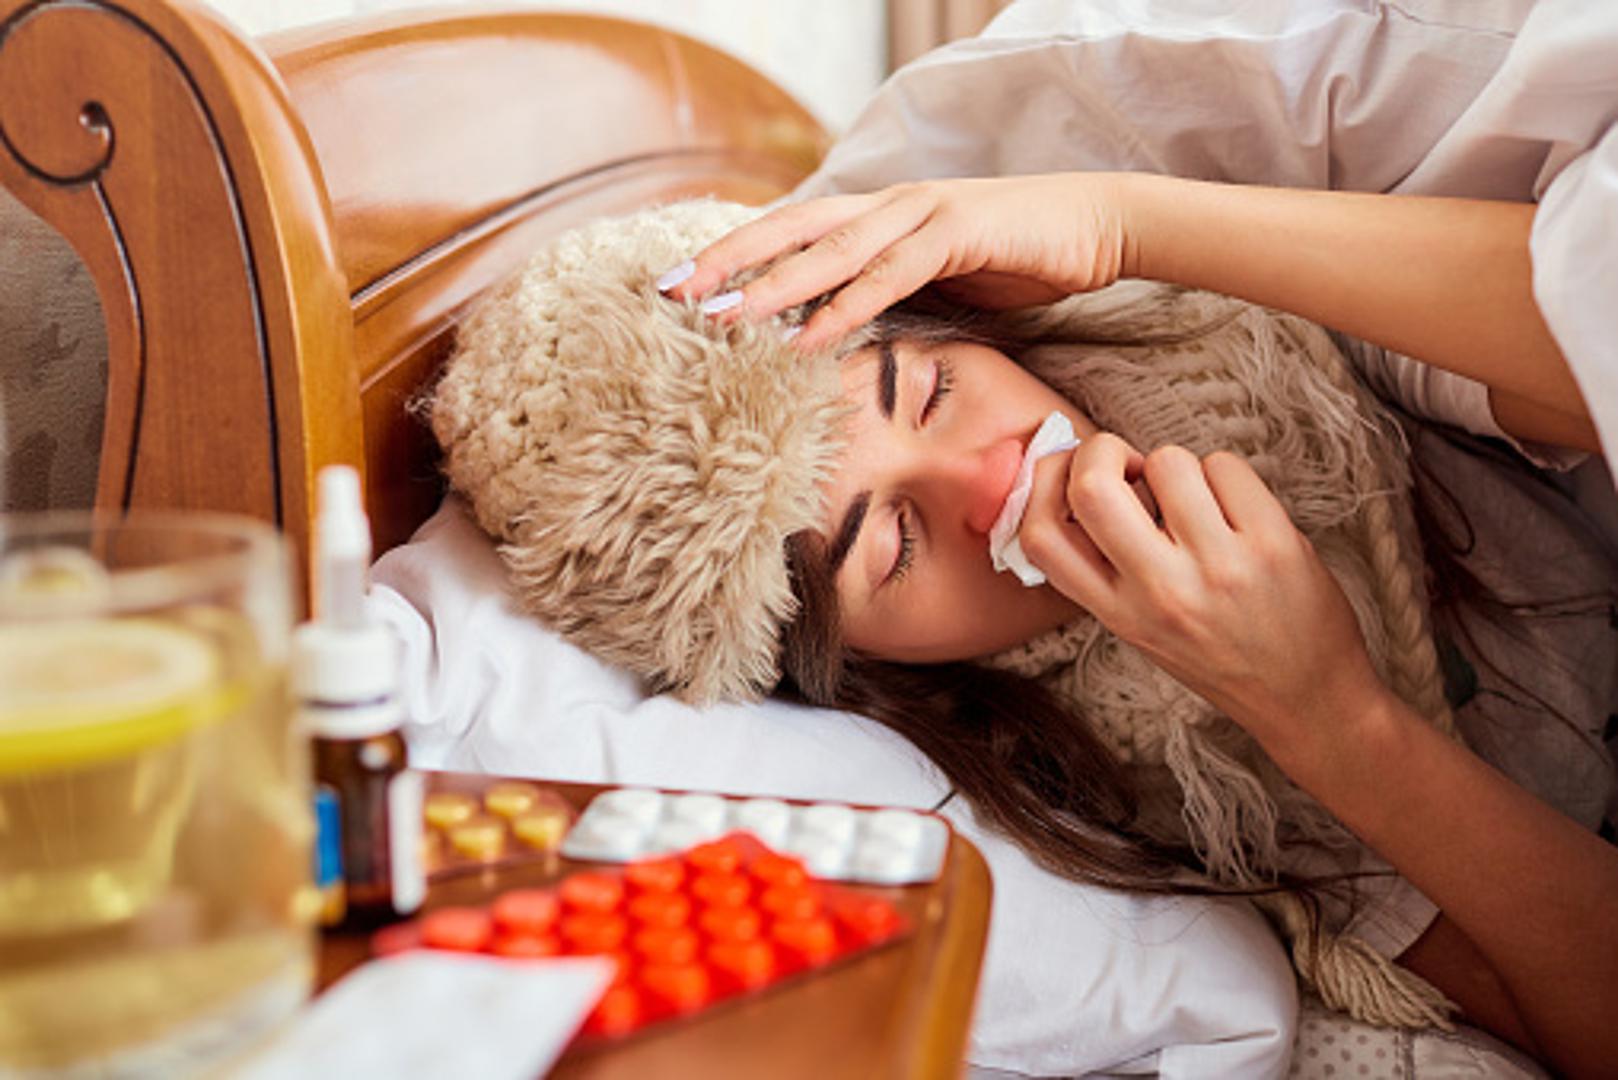 2. Bole li vas mišići: Za razliku od prehlade za gripu su karakteristični bolni mišići i zglobovi

